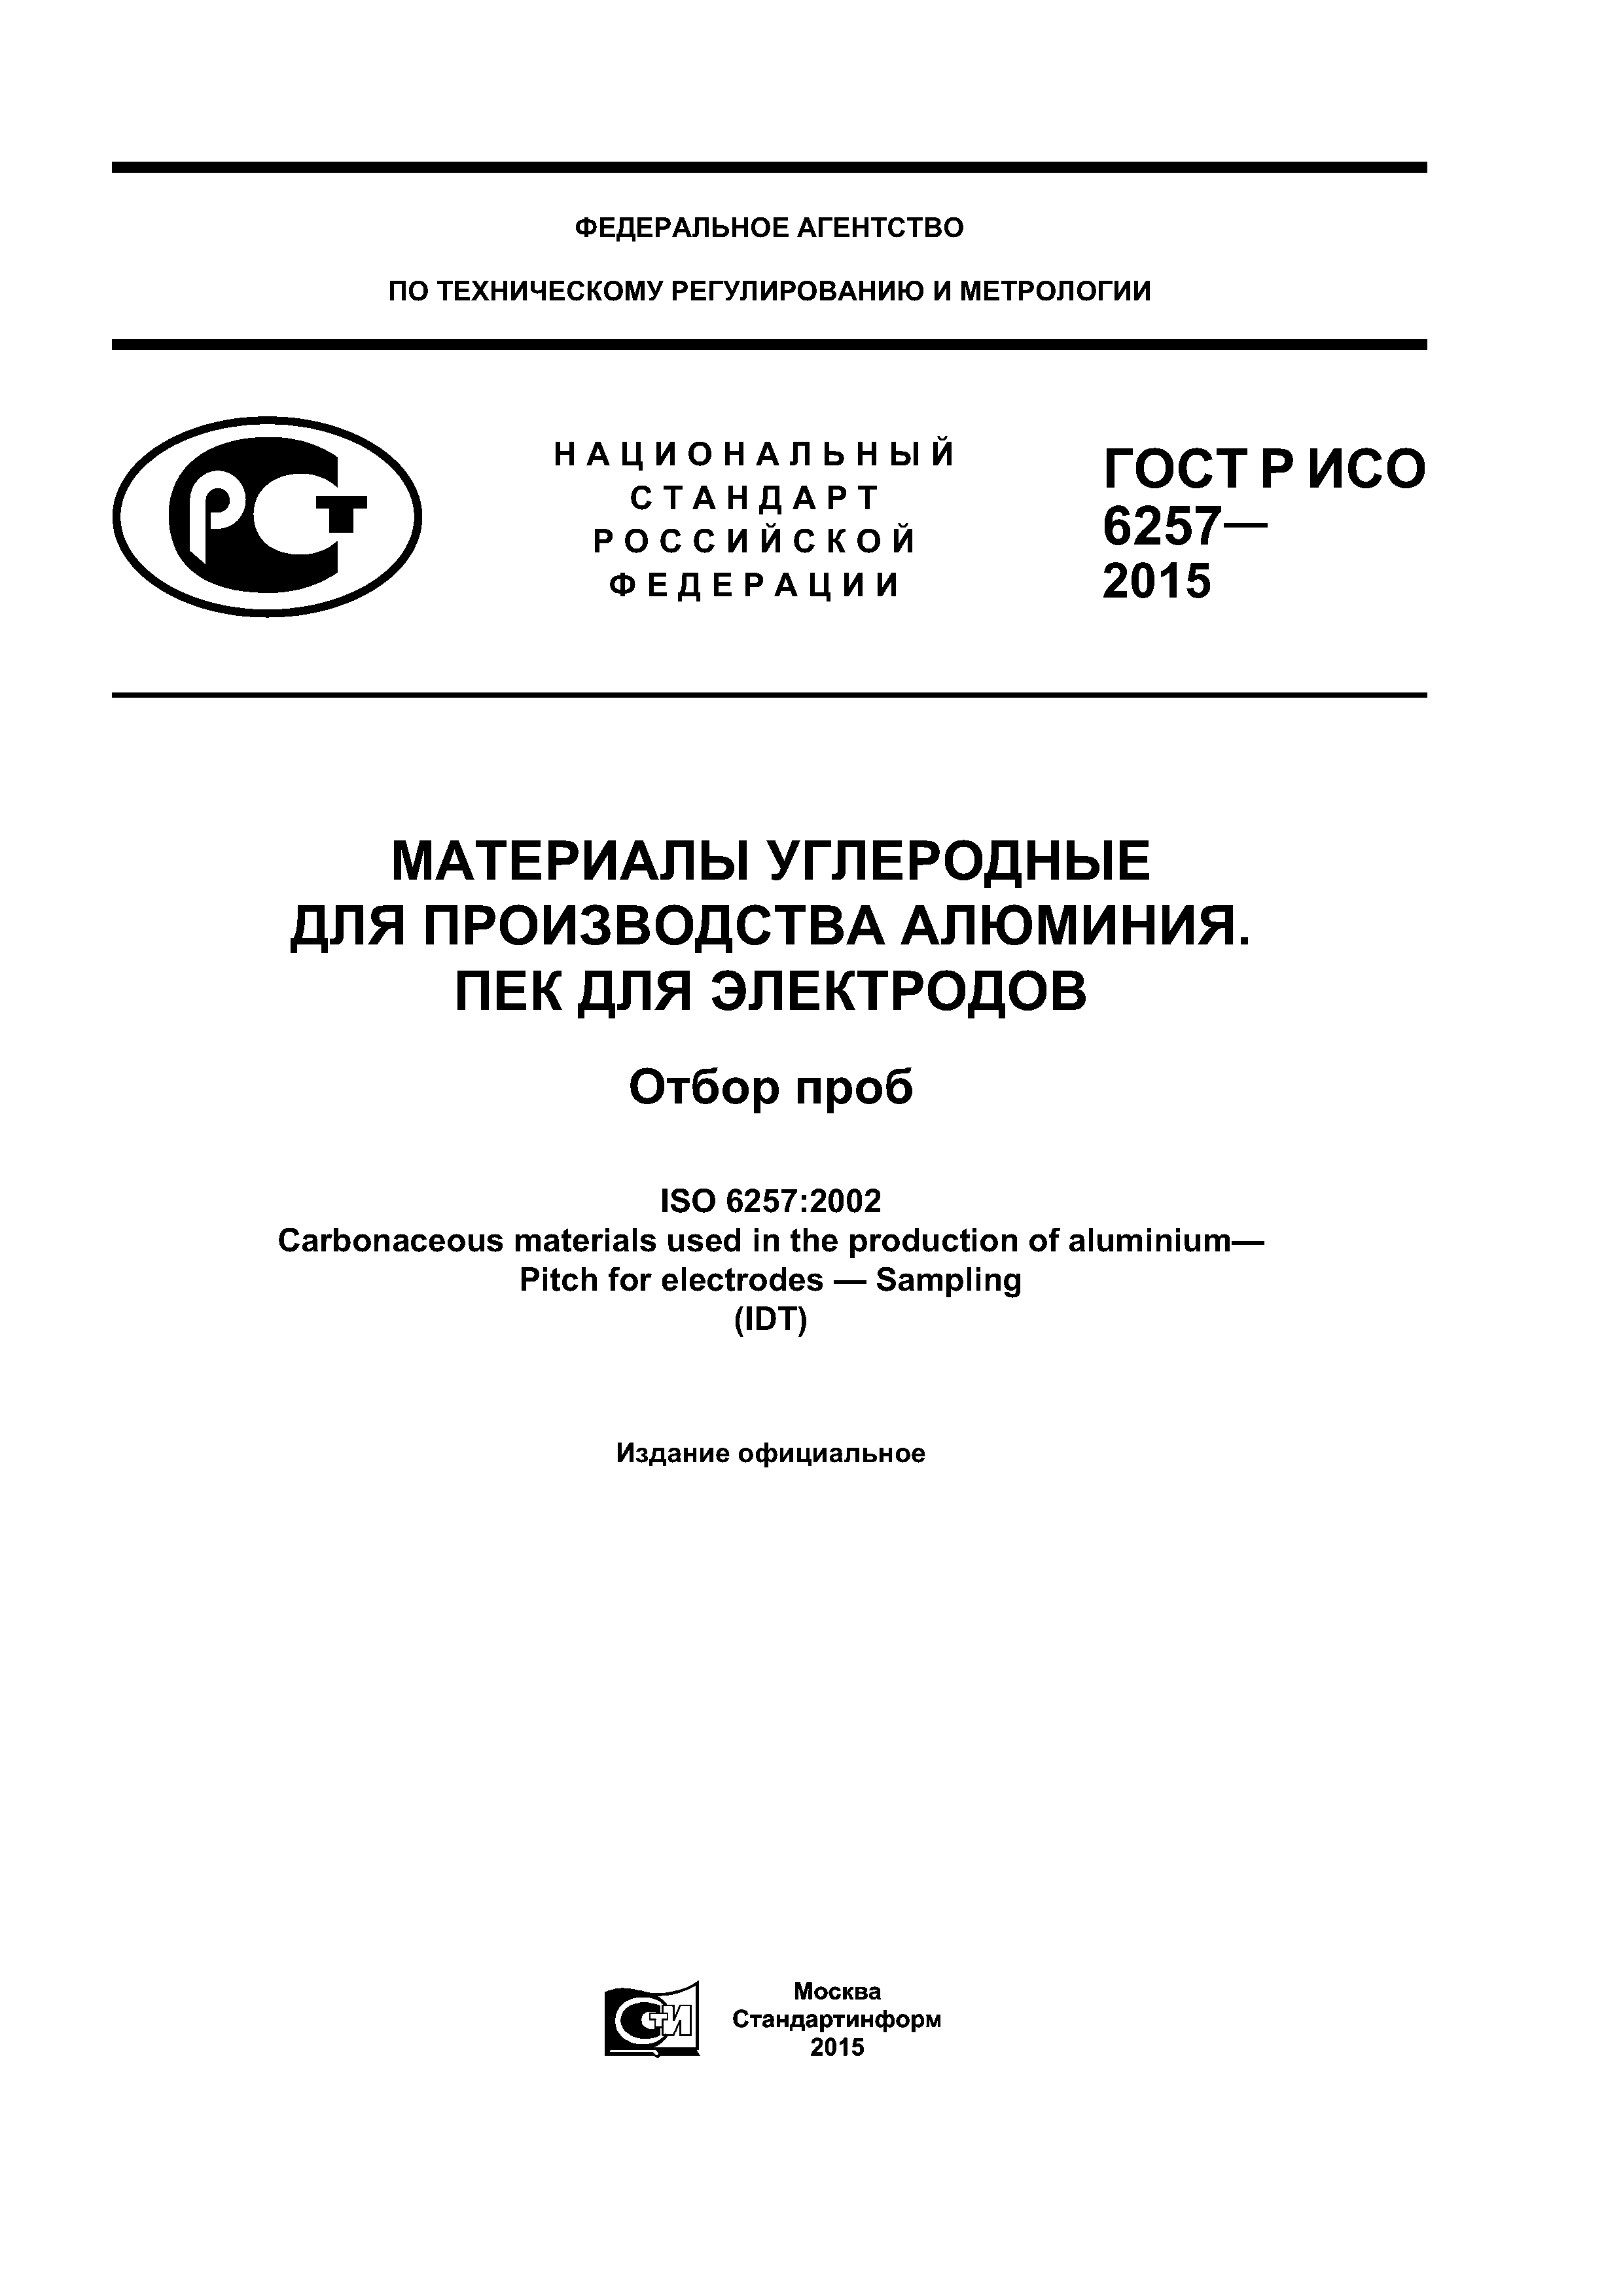 ГОСТ Р ИСО 6257-2015